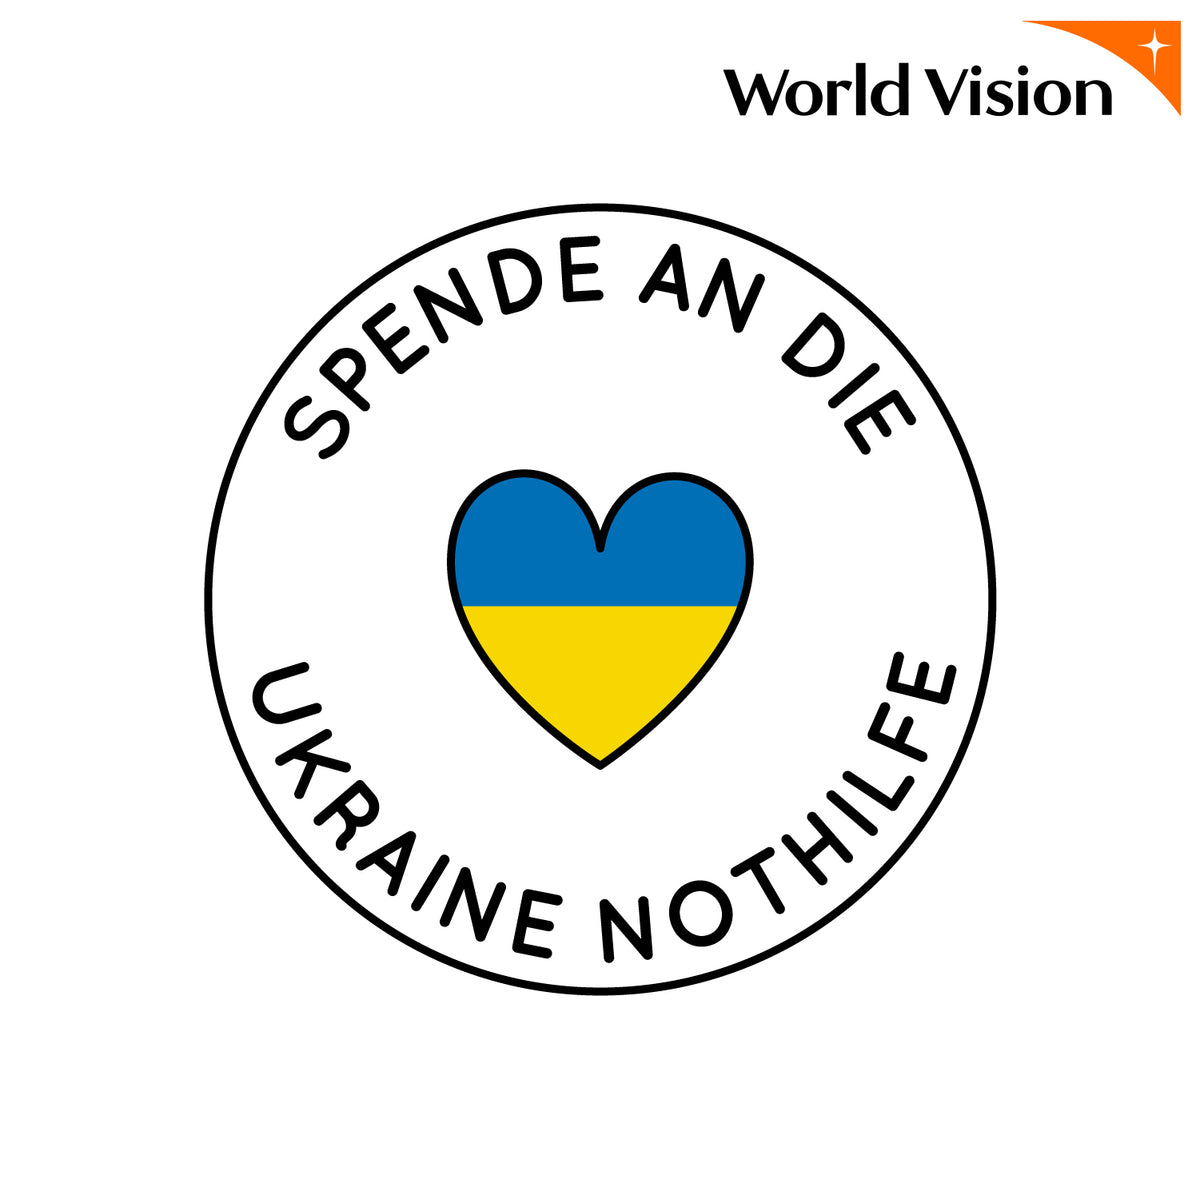 1€ Spende an die Ukraine Nothilfe